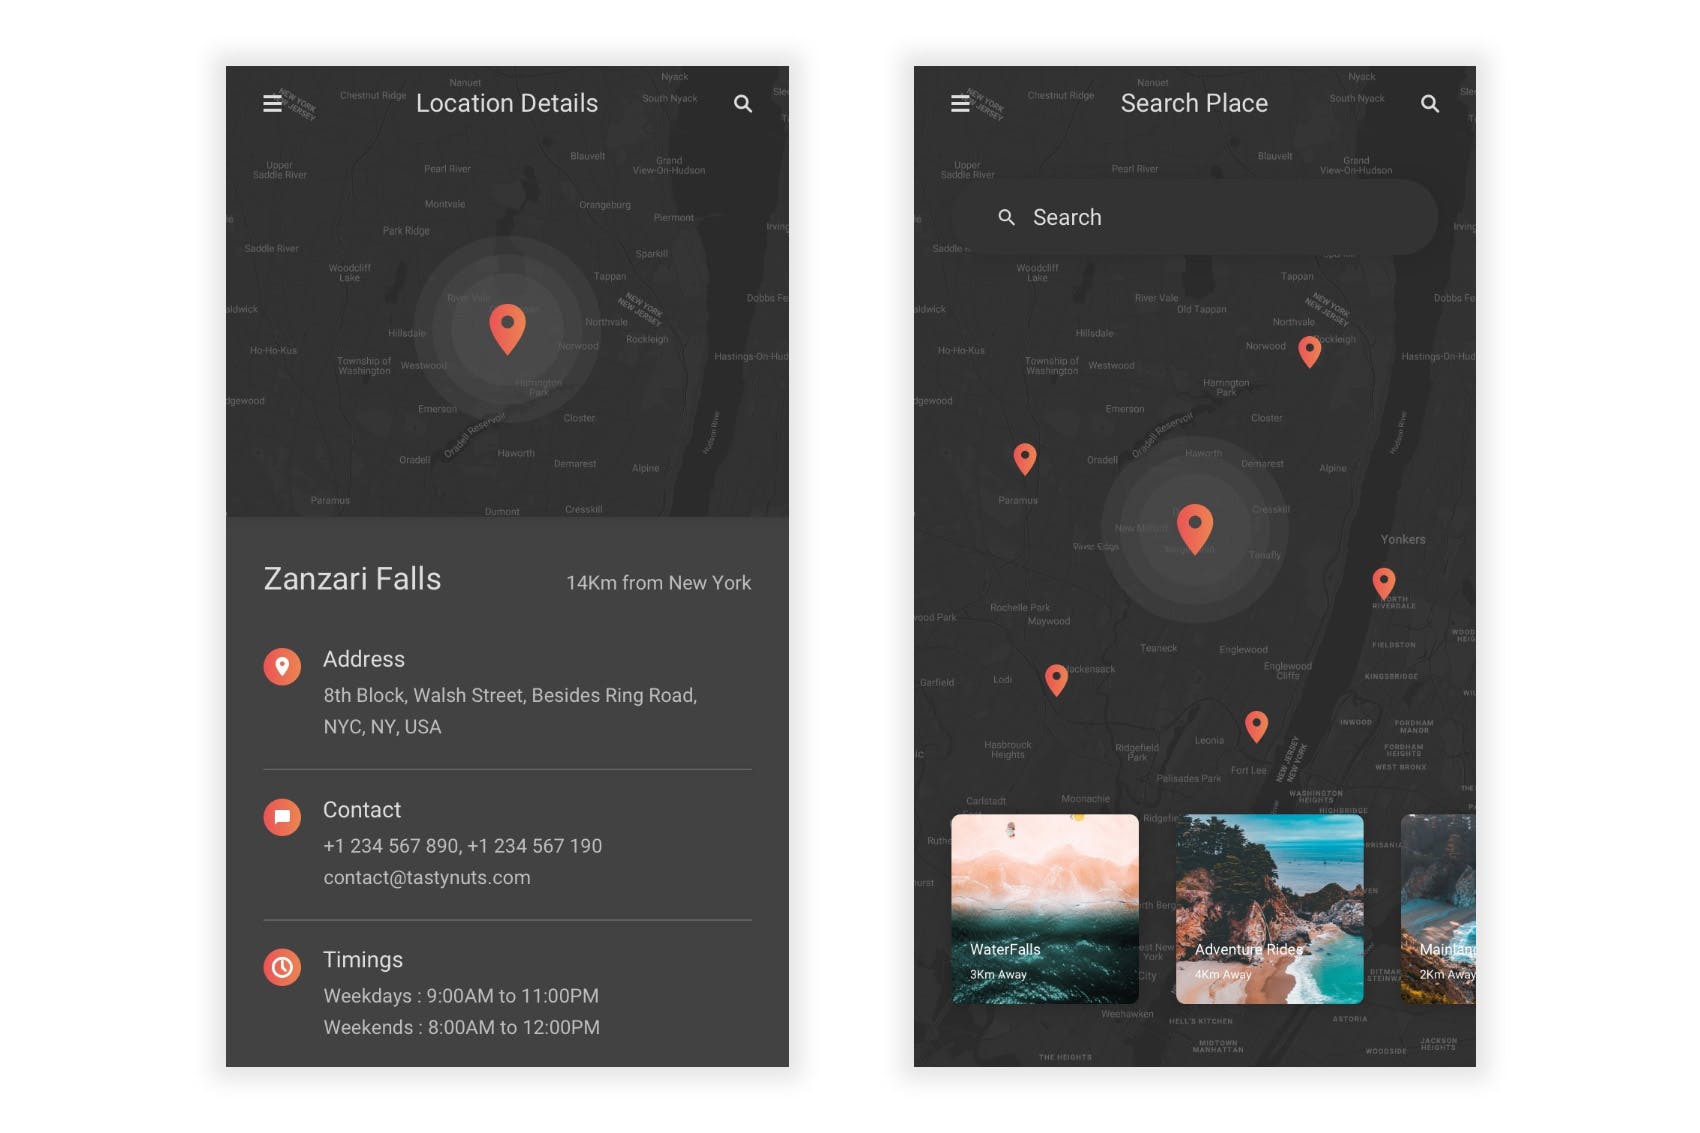 旅游/旅行APP界面设计UI套件Figma模板 Sair – Tour & Travel Figma UI Kit插图(7)